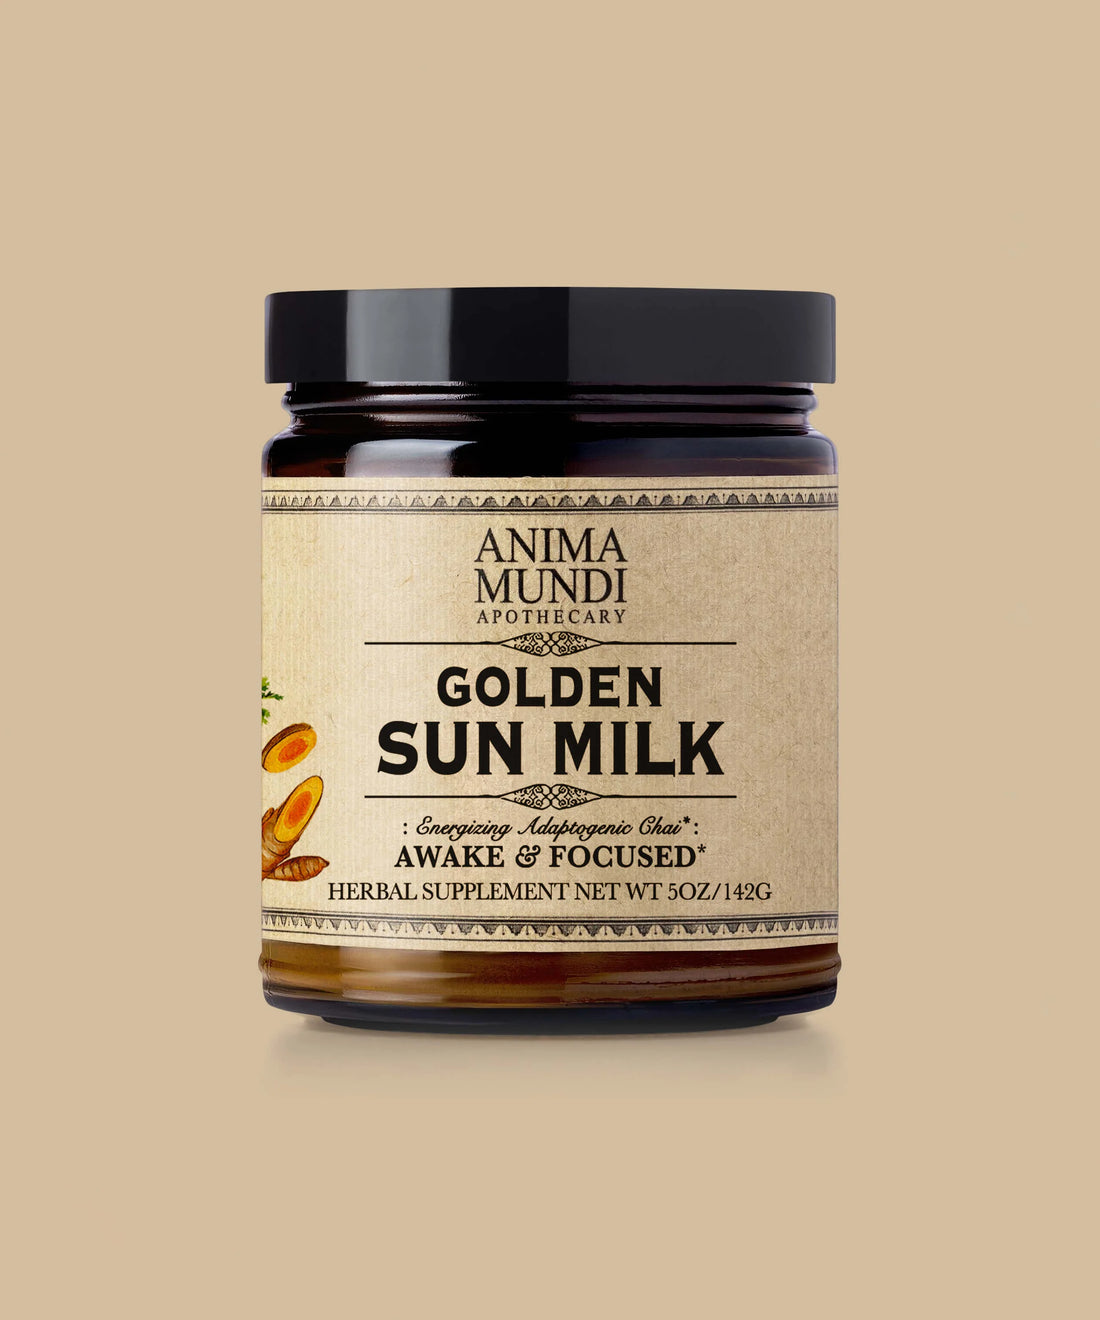 GOLDEN SUN MILK BY ANIMA MUNDI